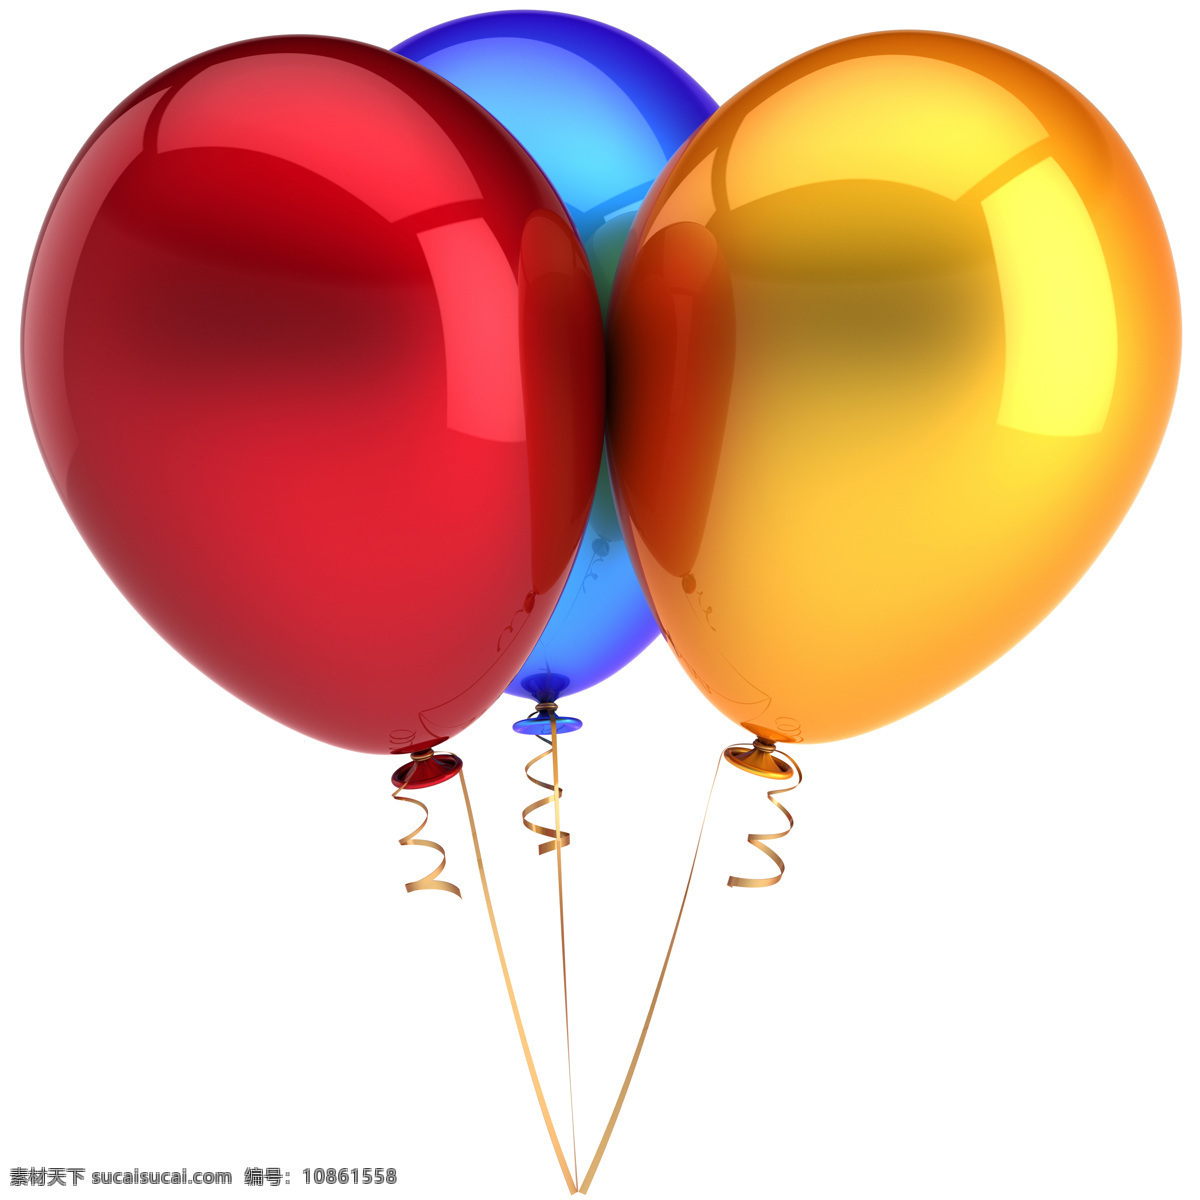 彩色气球高清 彩色气球 气球 彩球 节日气球 节日彩球 节日素材 节日庆祝 3d设计 其他类别 生活百科 白色